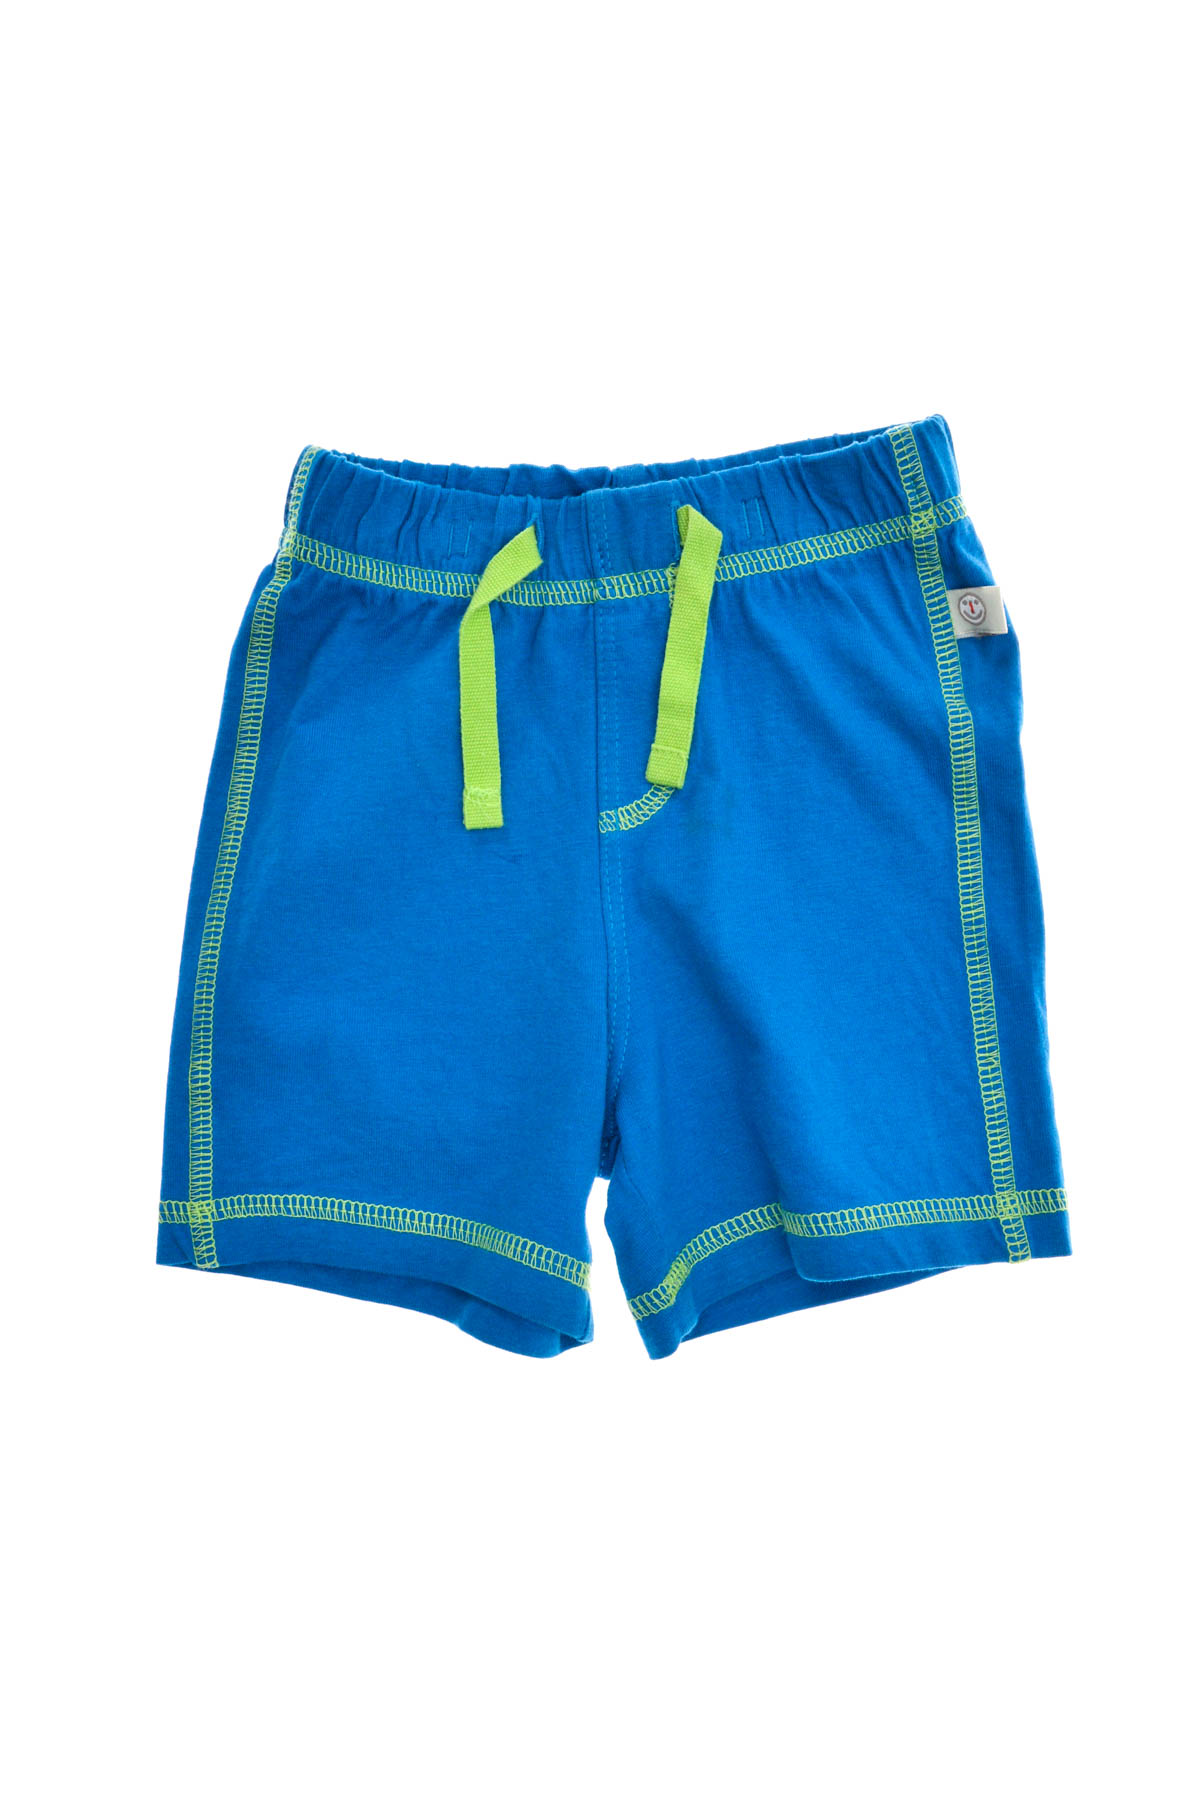 Baby boy's shorts - Liegelind - 0